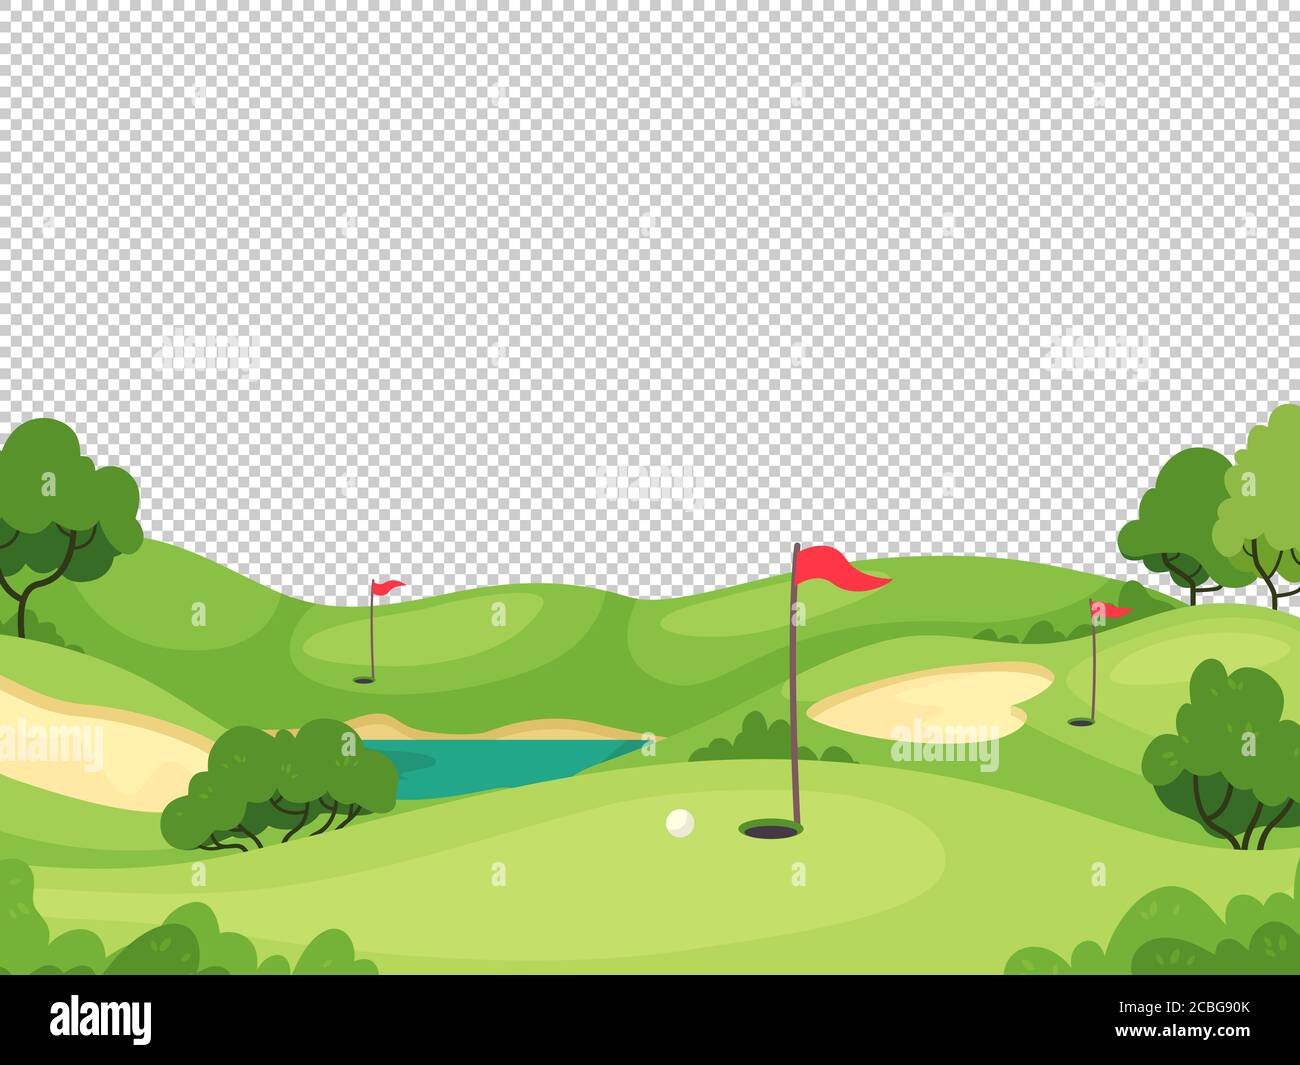 Golf Hintergrund. Grüner Golfplatz mit Loch und roten Fahnen für Einladungskarte, Poster und Banner, Charity-Play-Turnier Vektor-Vorlage Stock Vektor